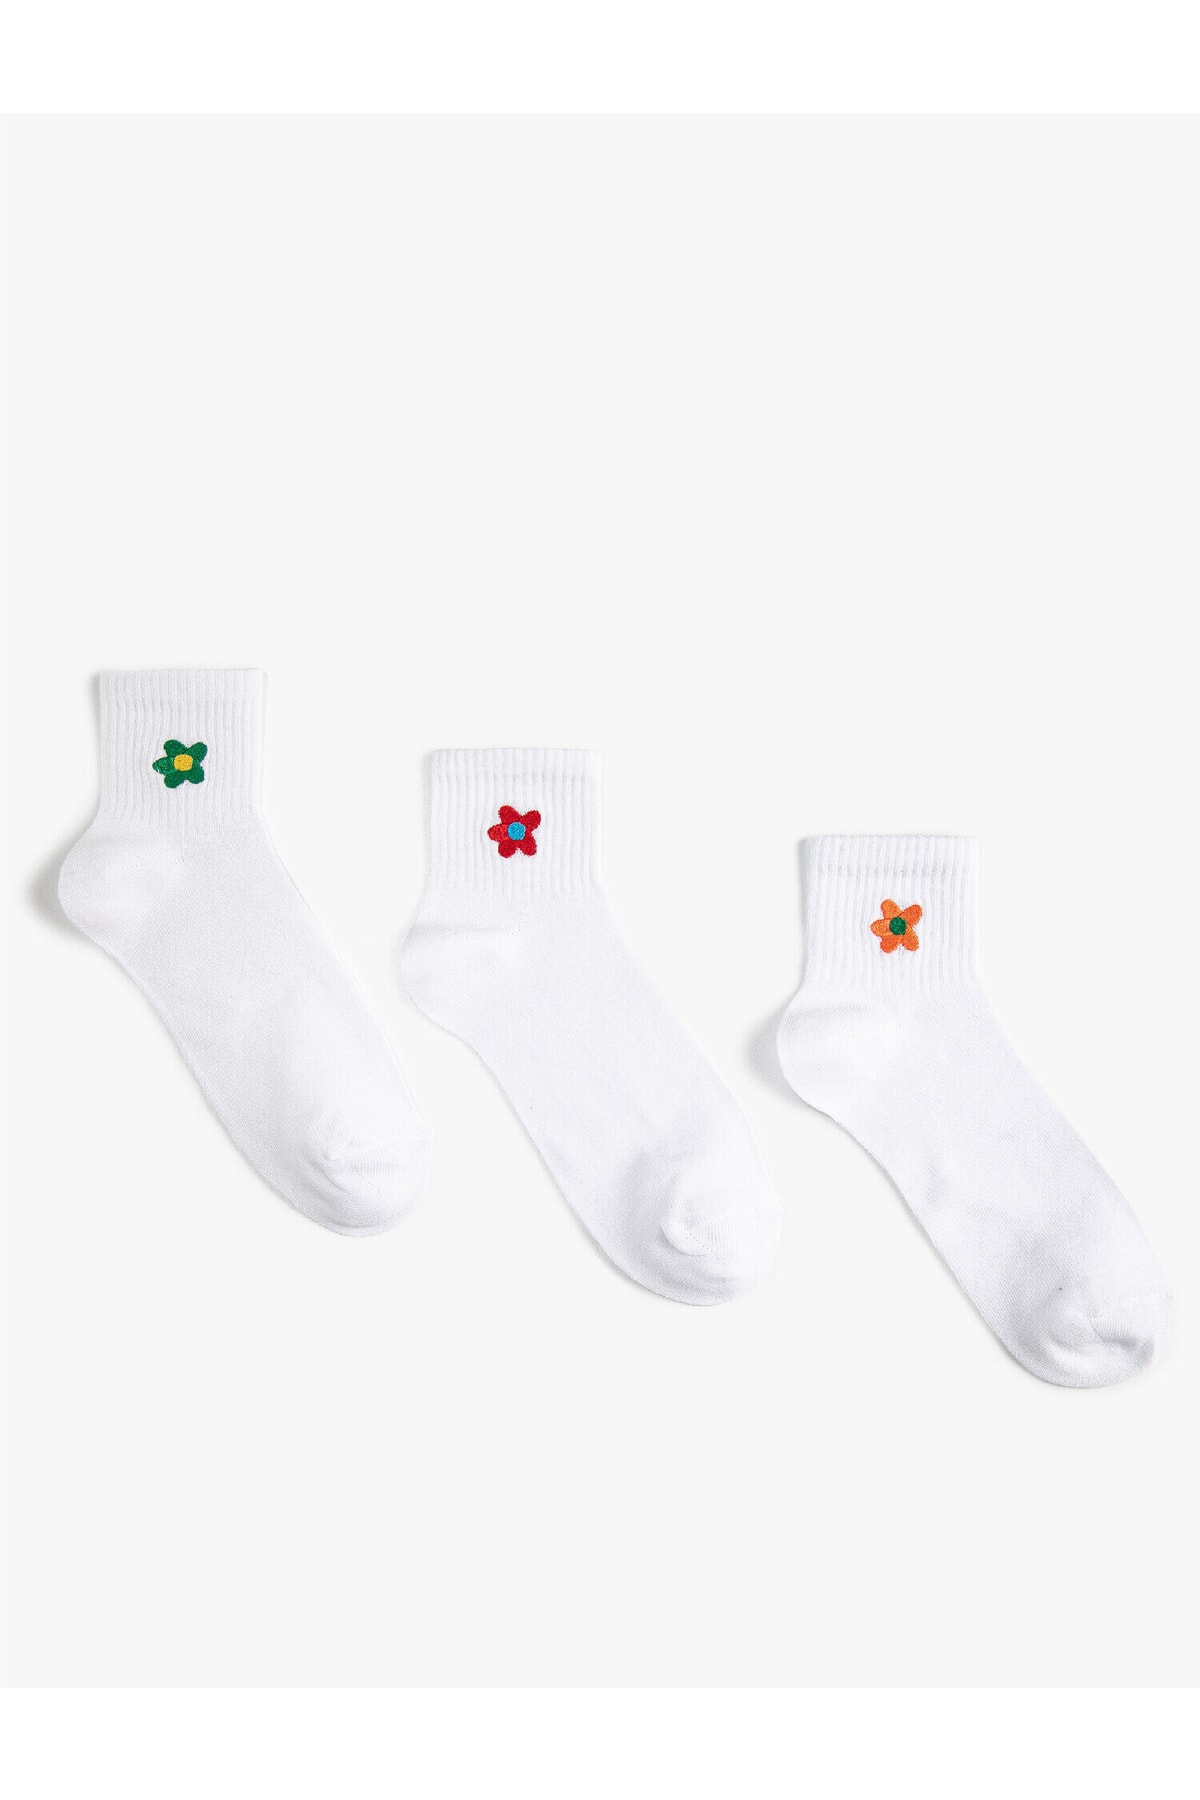 Koton 3lü Çiçek Işlemeli Çorap Seti